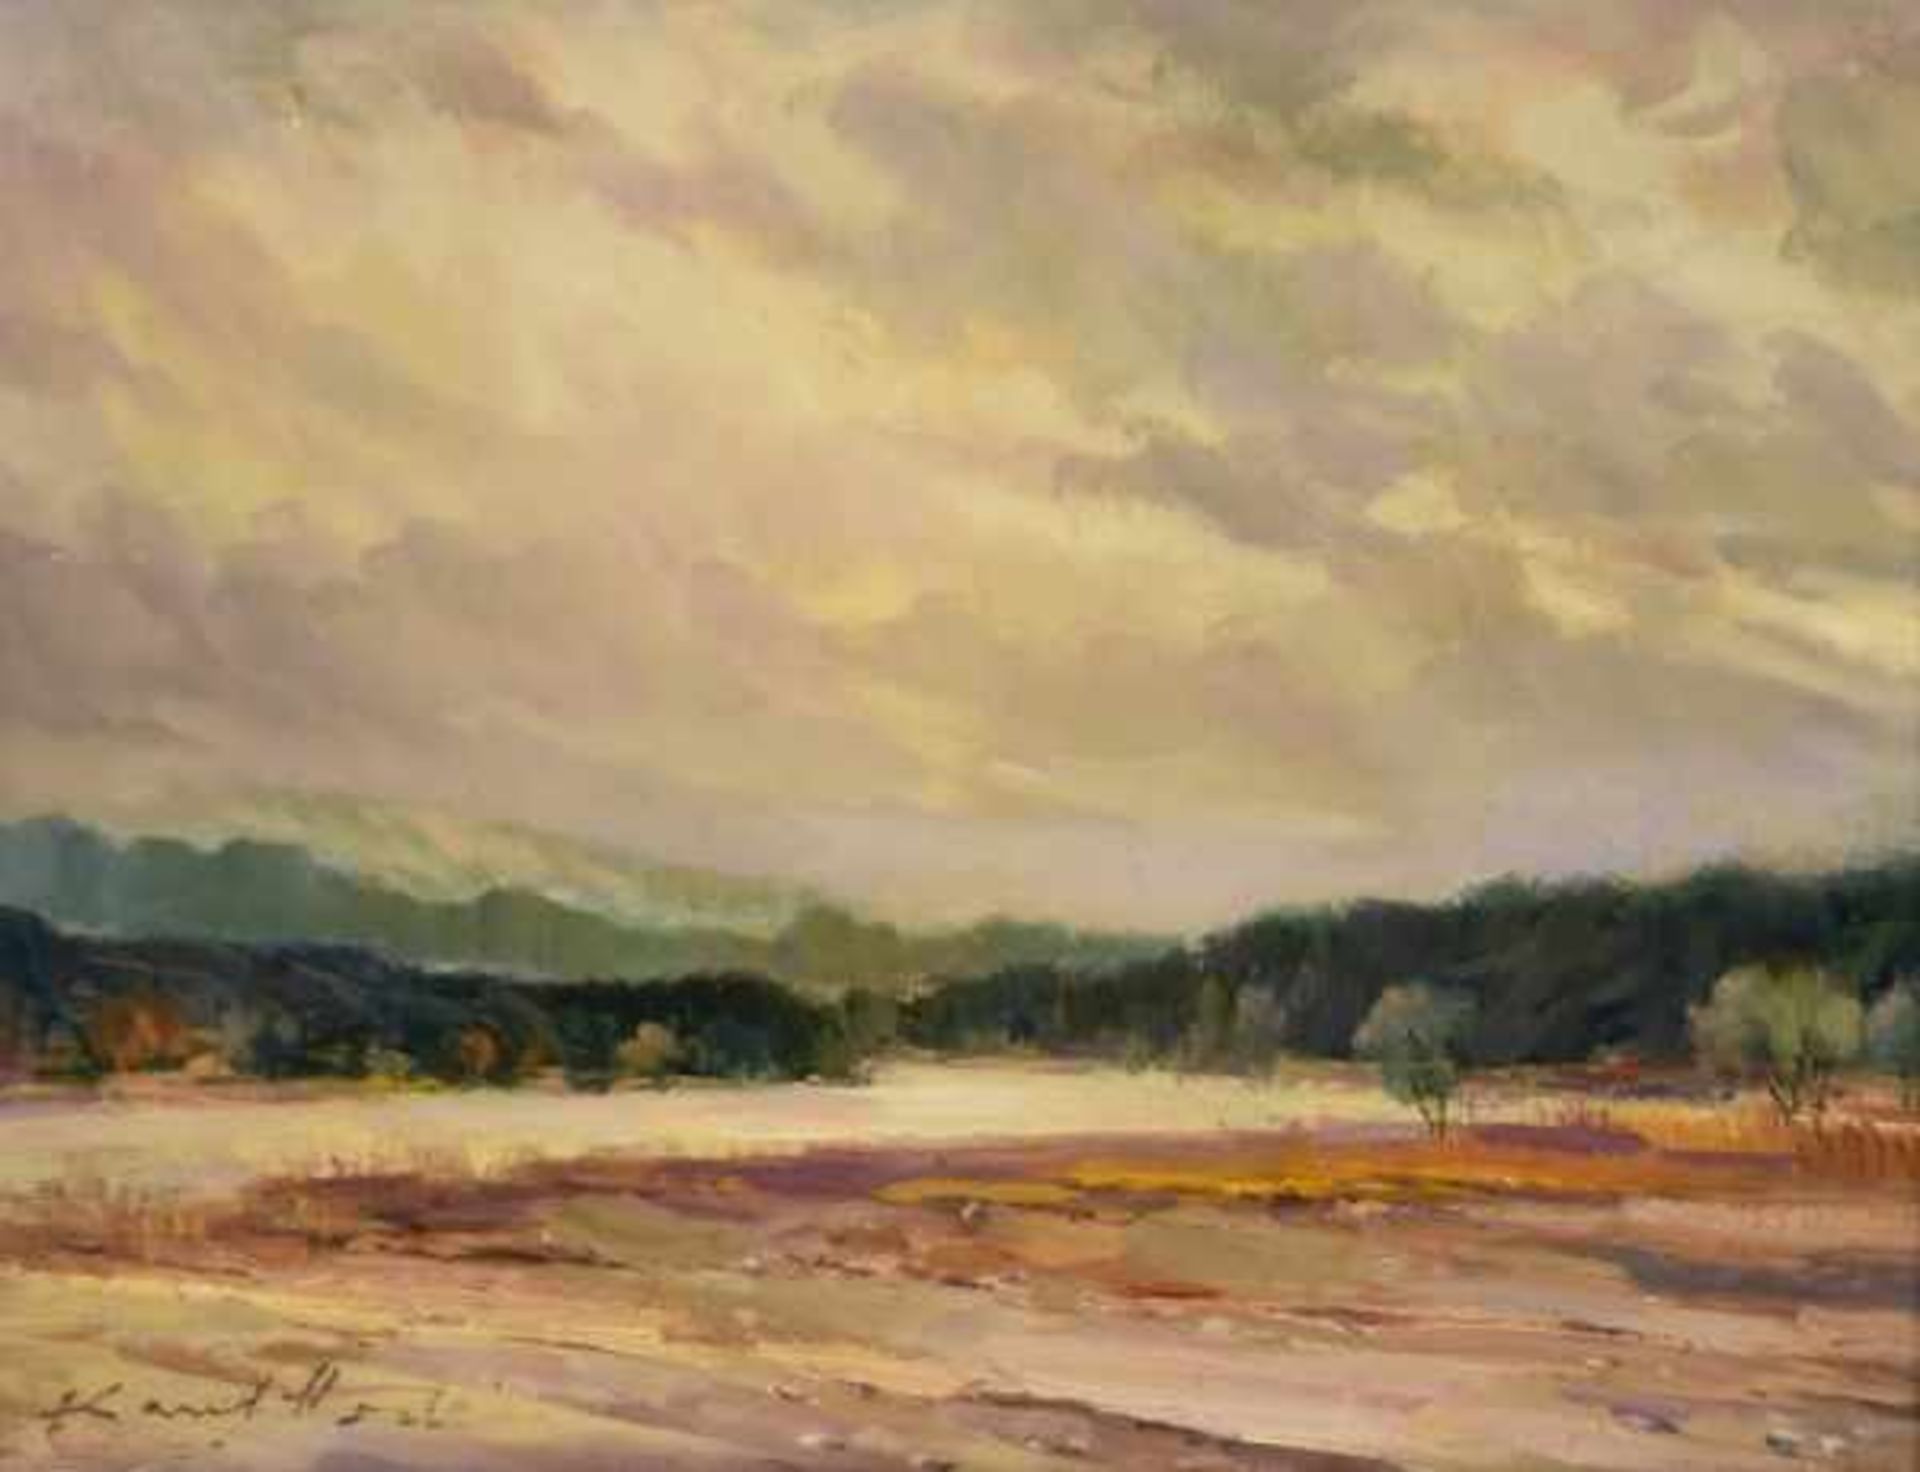 HODR Karel (1910 Prag - 2002 Konstanz) "Rheinufer", stimmungsvolle Landschaft mit Rheinufer und